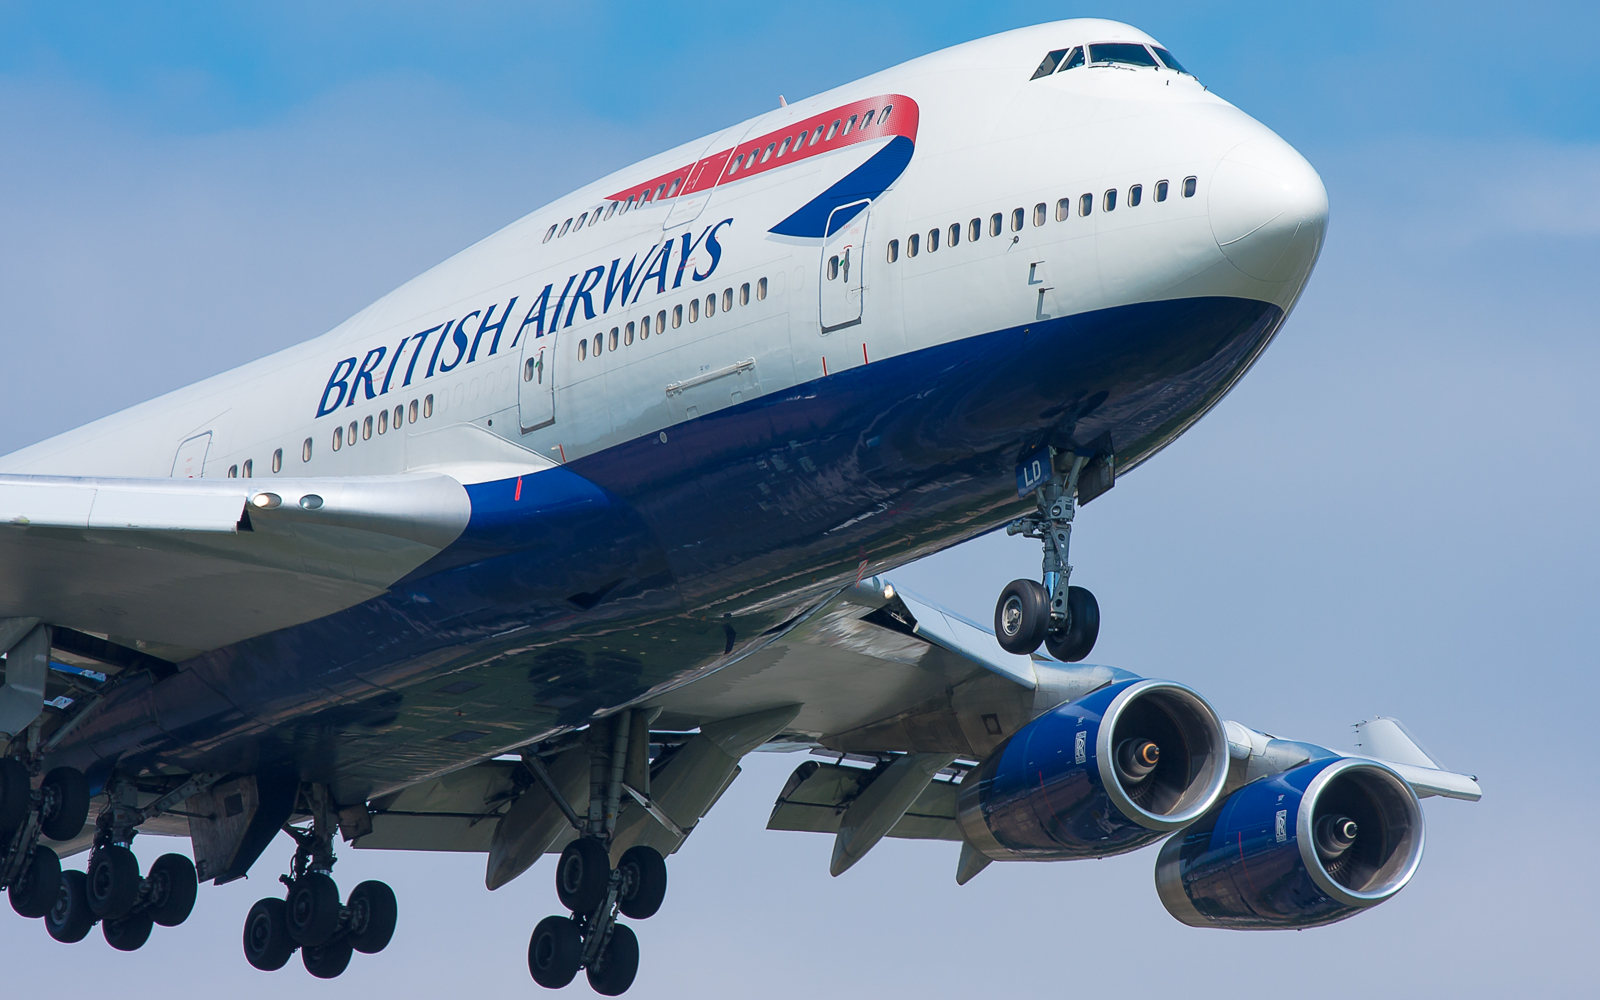 British Airways fleet departures 2013 onwards - Civilian Aviation